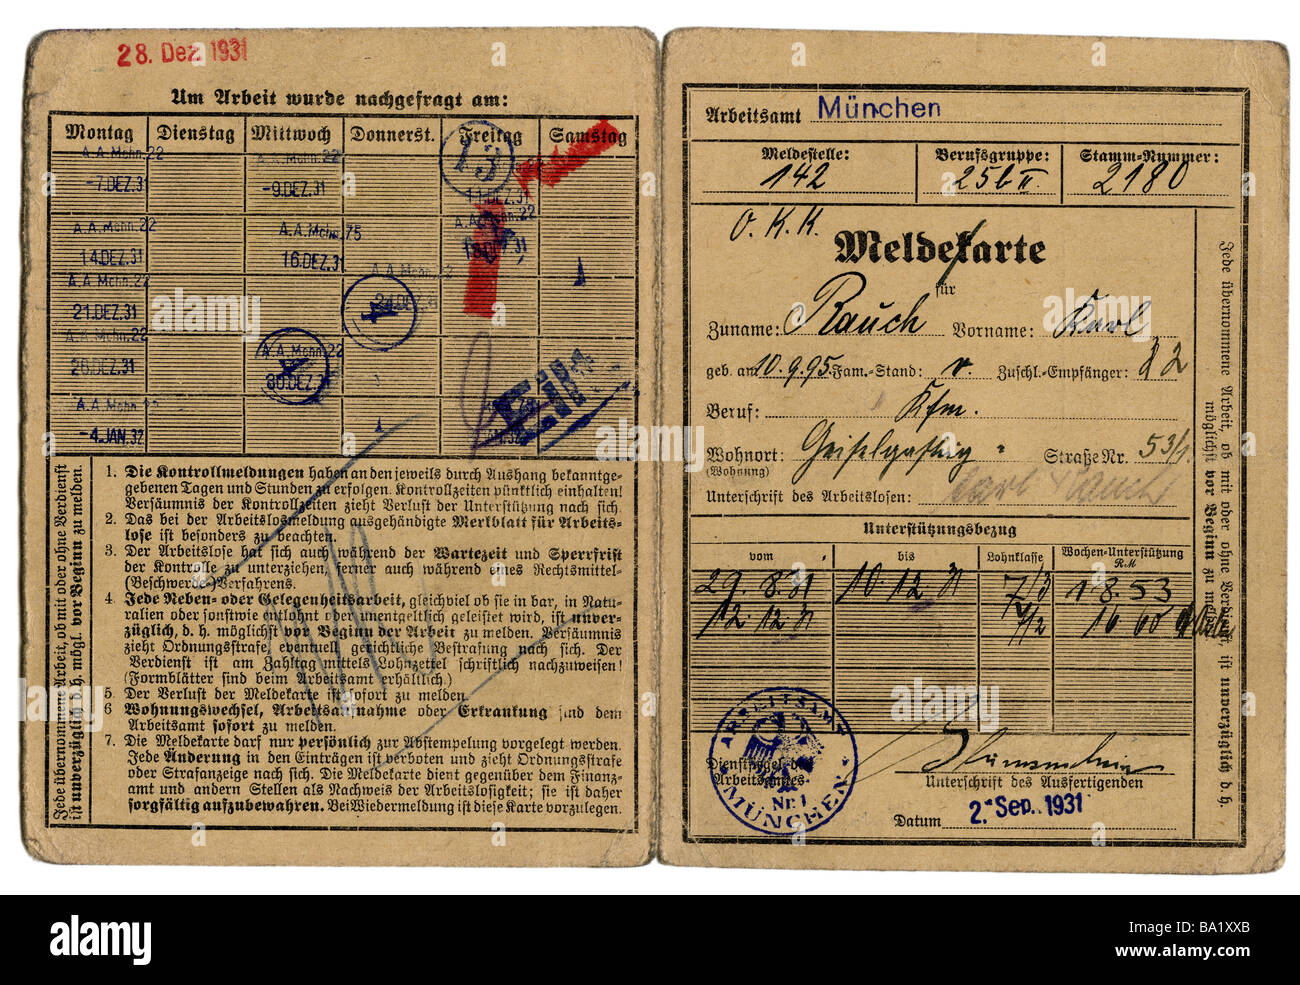 Persone, lavoro/lavoratore, licenziamento/disoccupazione, carta di registrazione di Karl Rauch, ufficio di lavoro di Monaco, pubblicata il 2.9.1931, Foto Stock